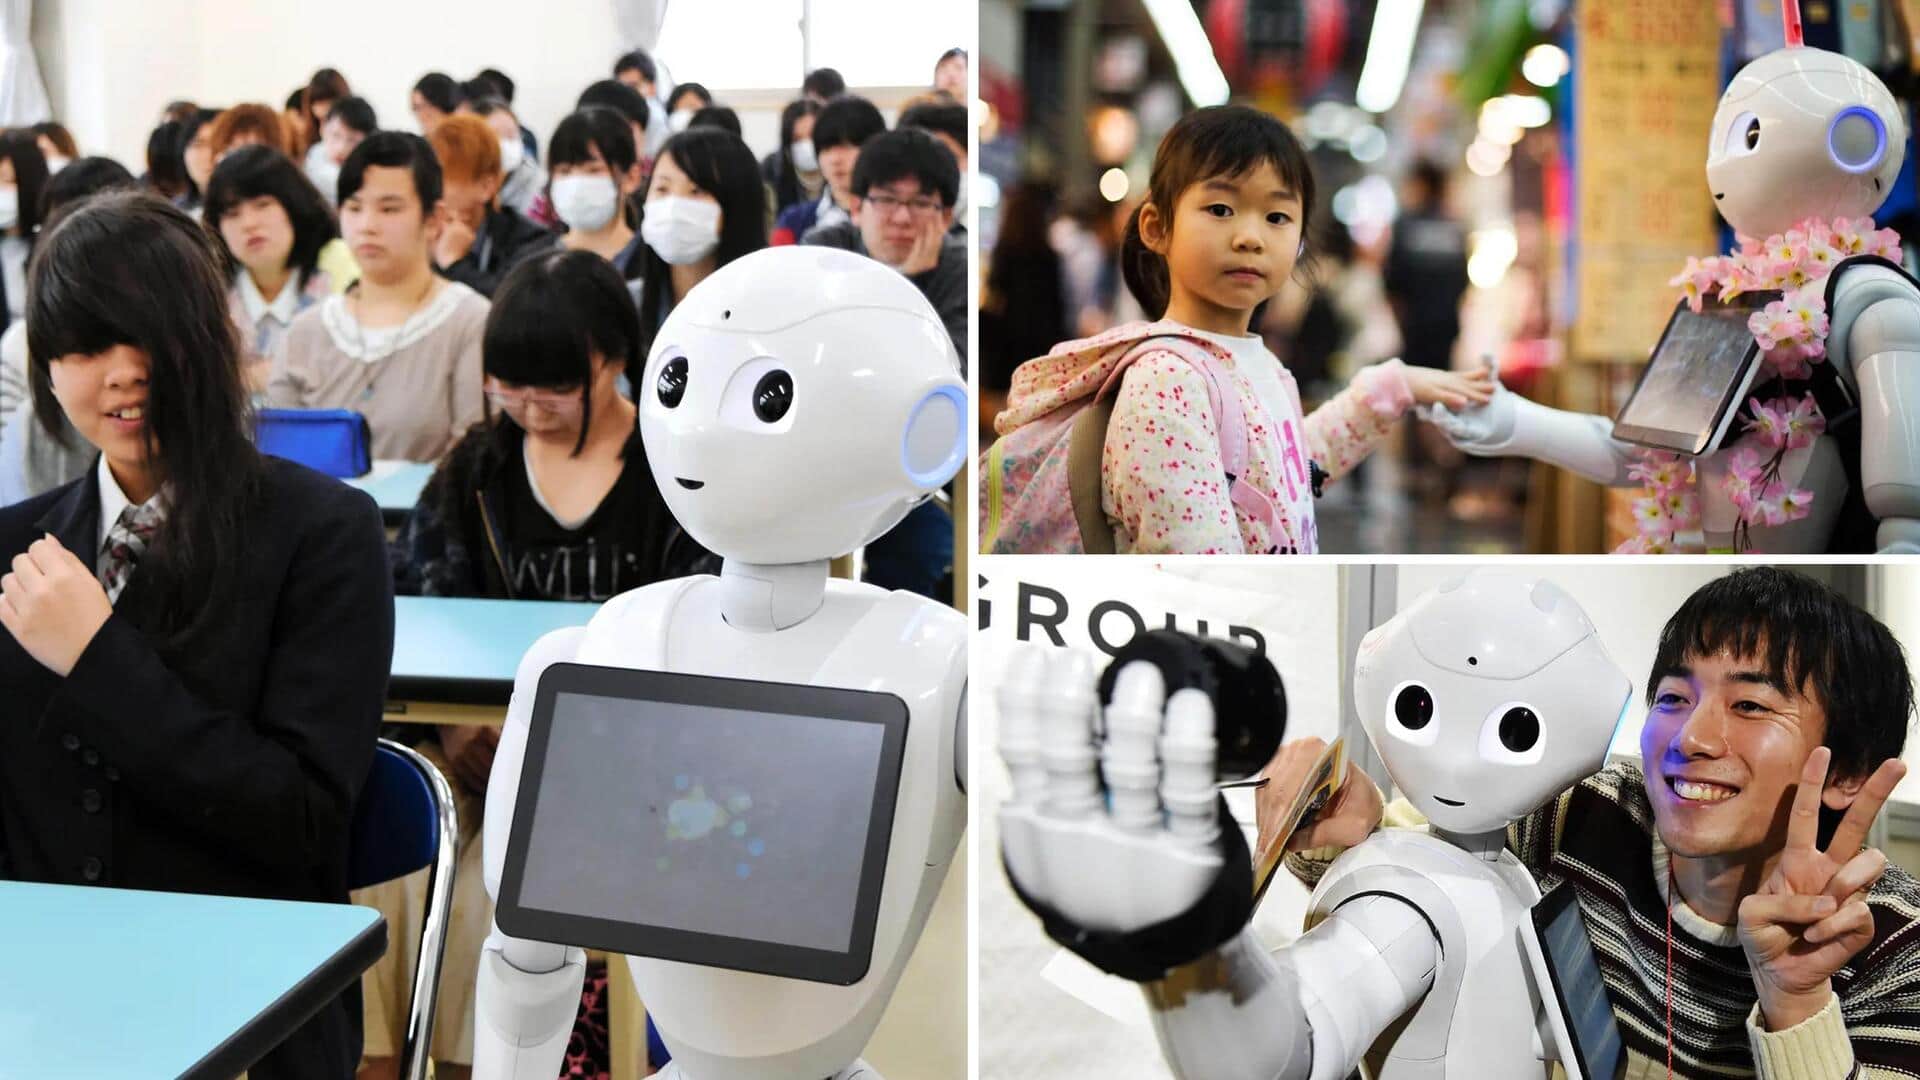 जापान: छात्रों की अनुपस्थिति में बढ़ोतरी से निपटने के लिए रोबोट का इस्तेमाल करेगा ये शहर 